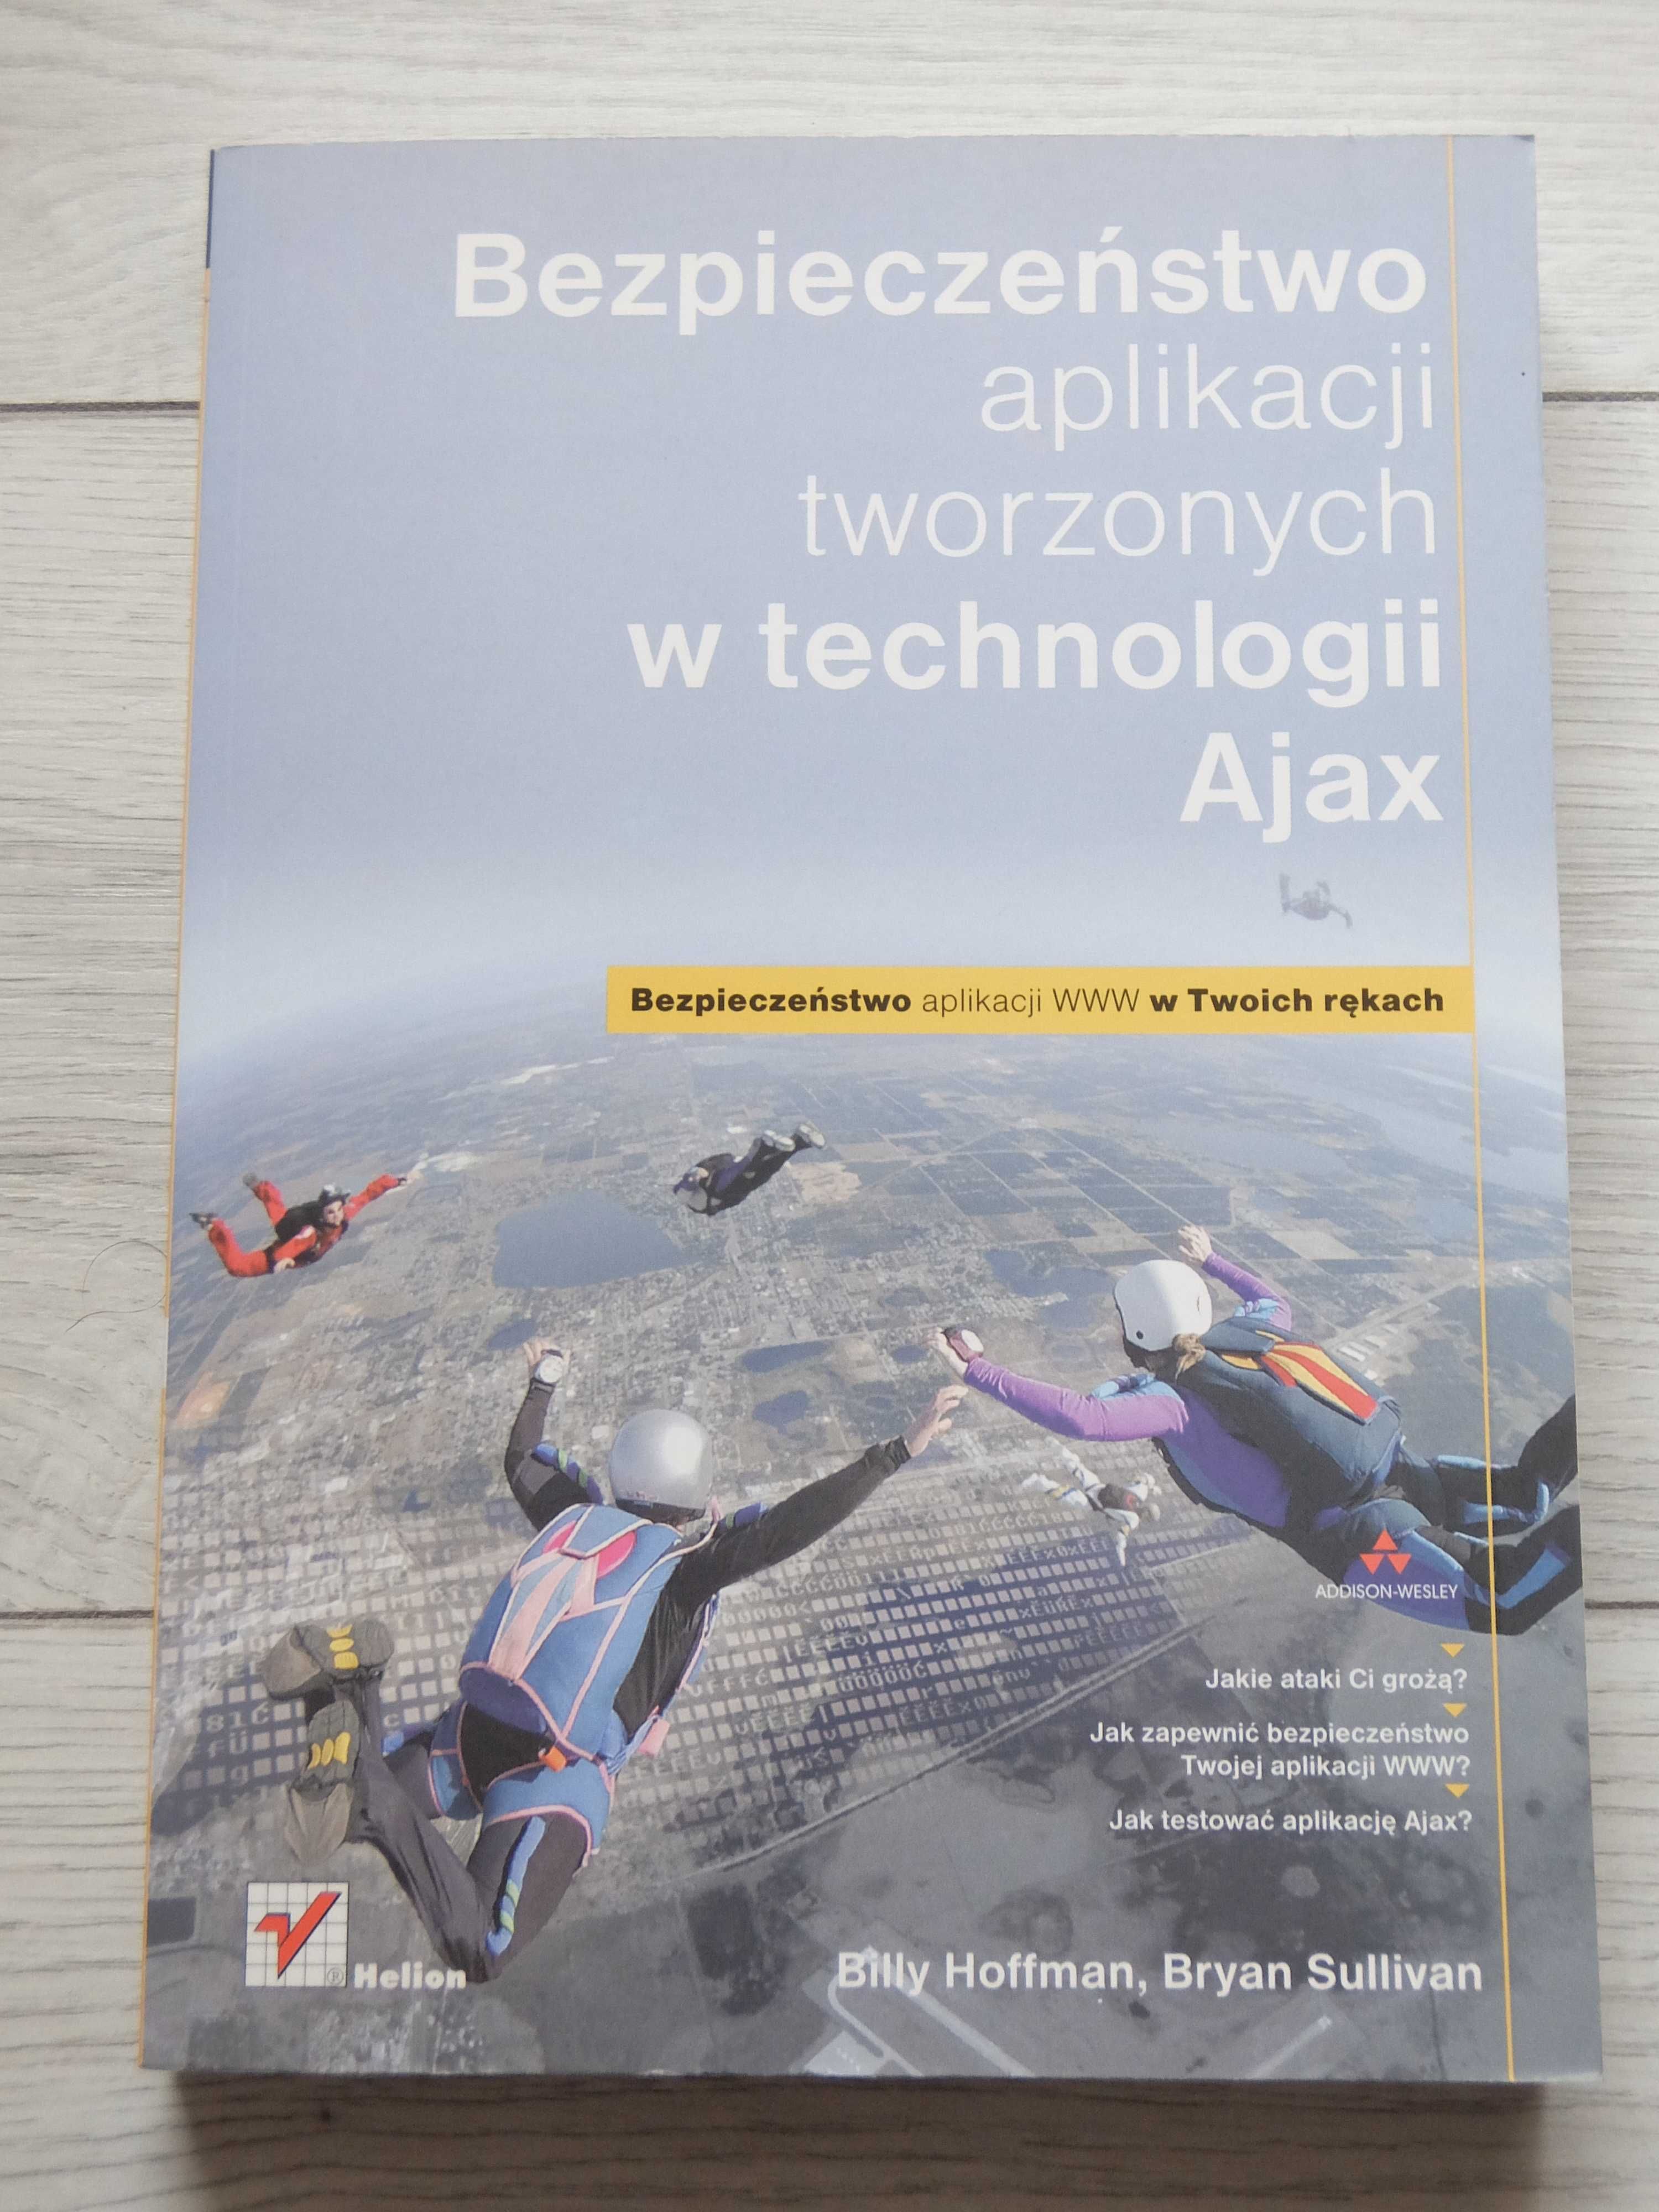 Bezpieczeństwo aplikacji tworzonych w technologii Ajax